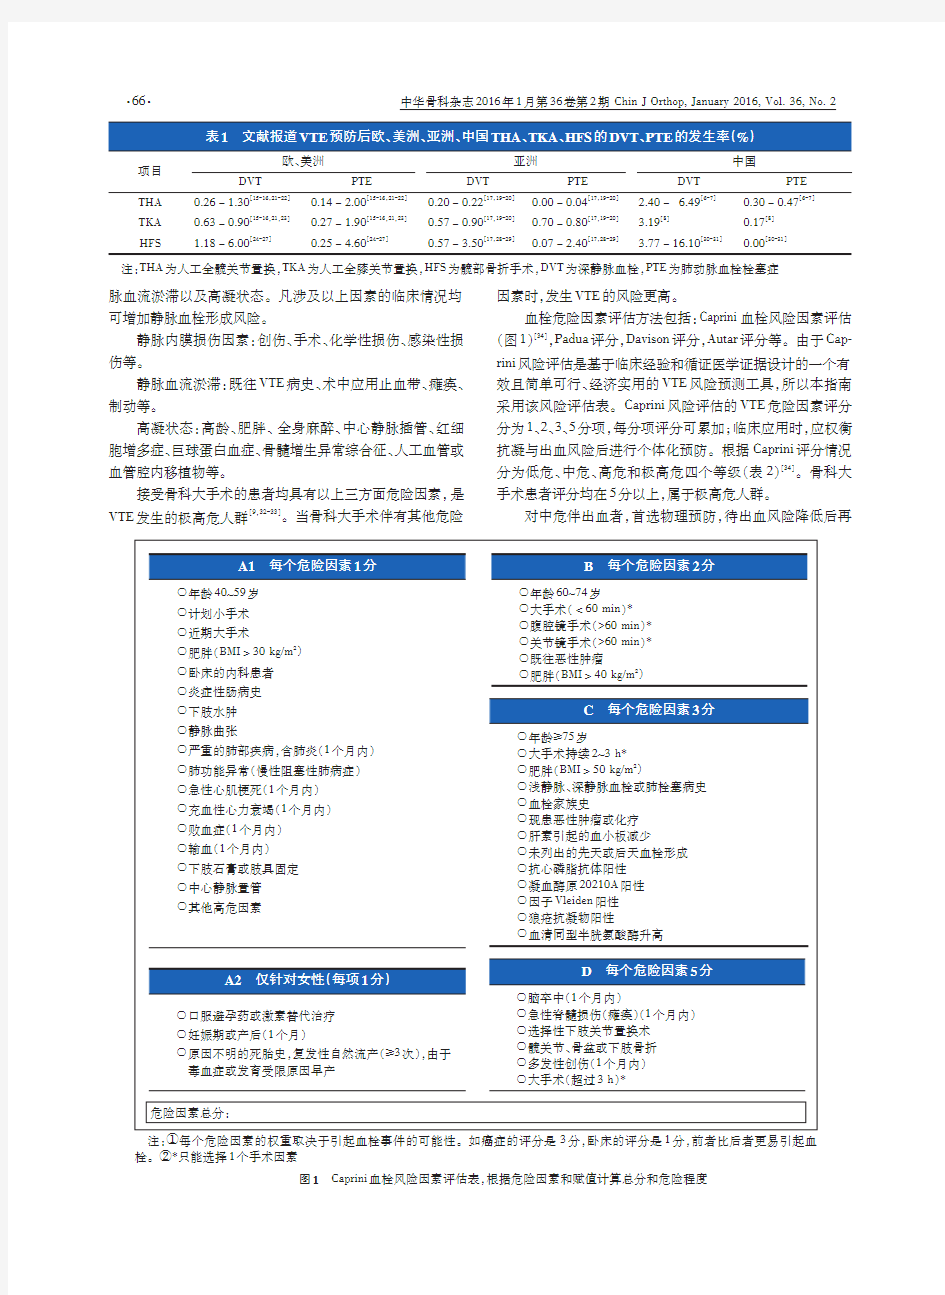 中国骨科大手术静脉血栓栓塞症预防指南(2016年修订)